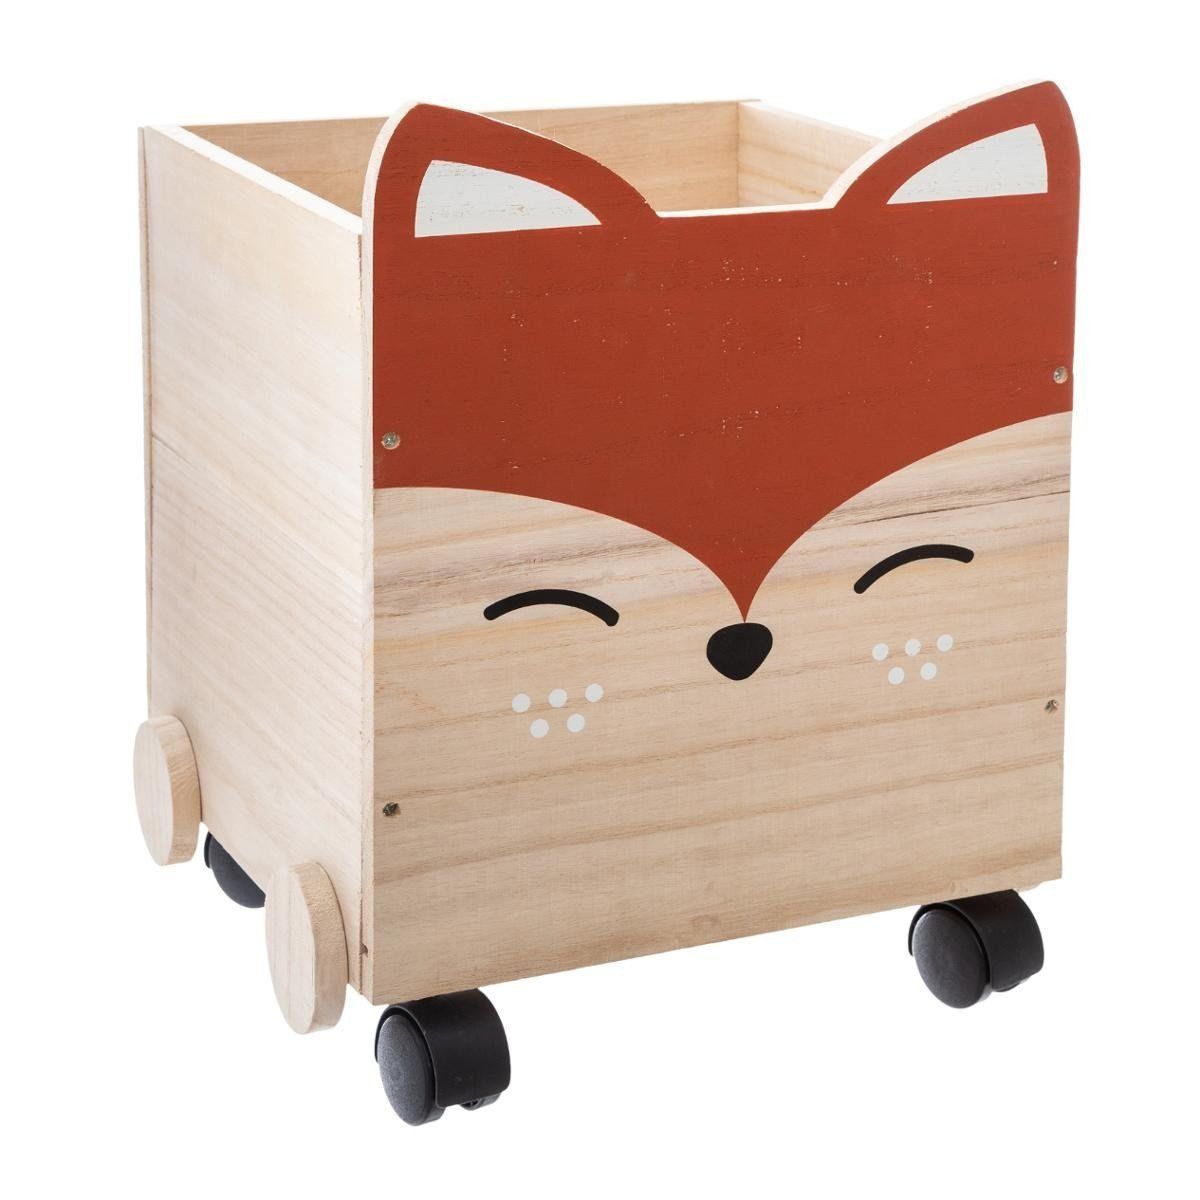 Dřevěná nádoba FOX s kolečky, mobilní box, 30x28x38 cm - EMAKO.CZ s.r.o.